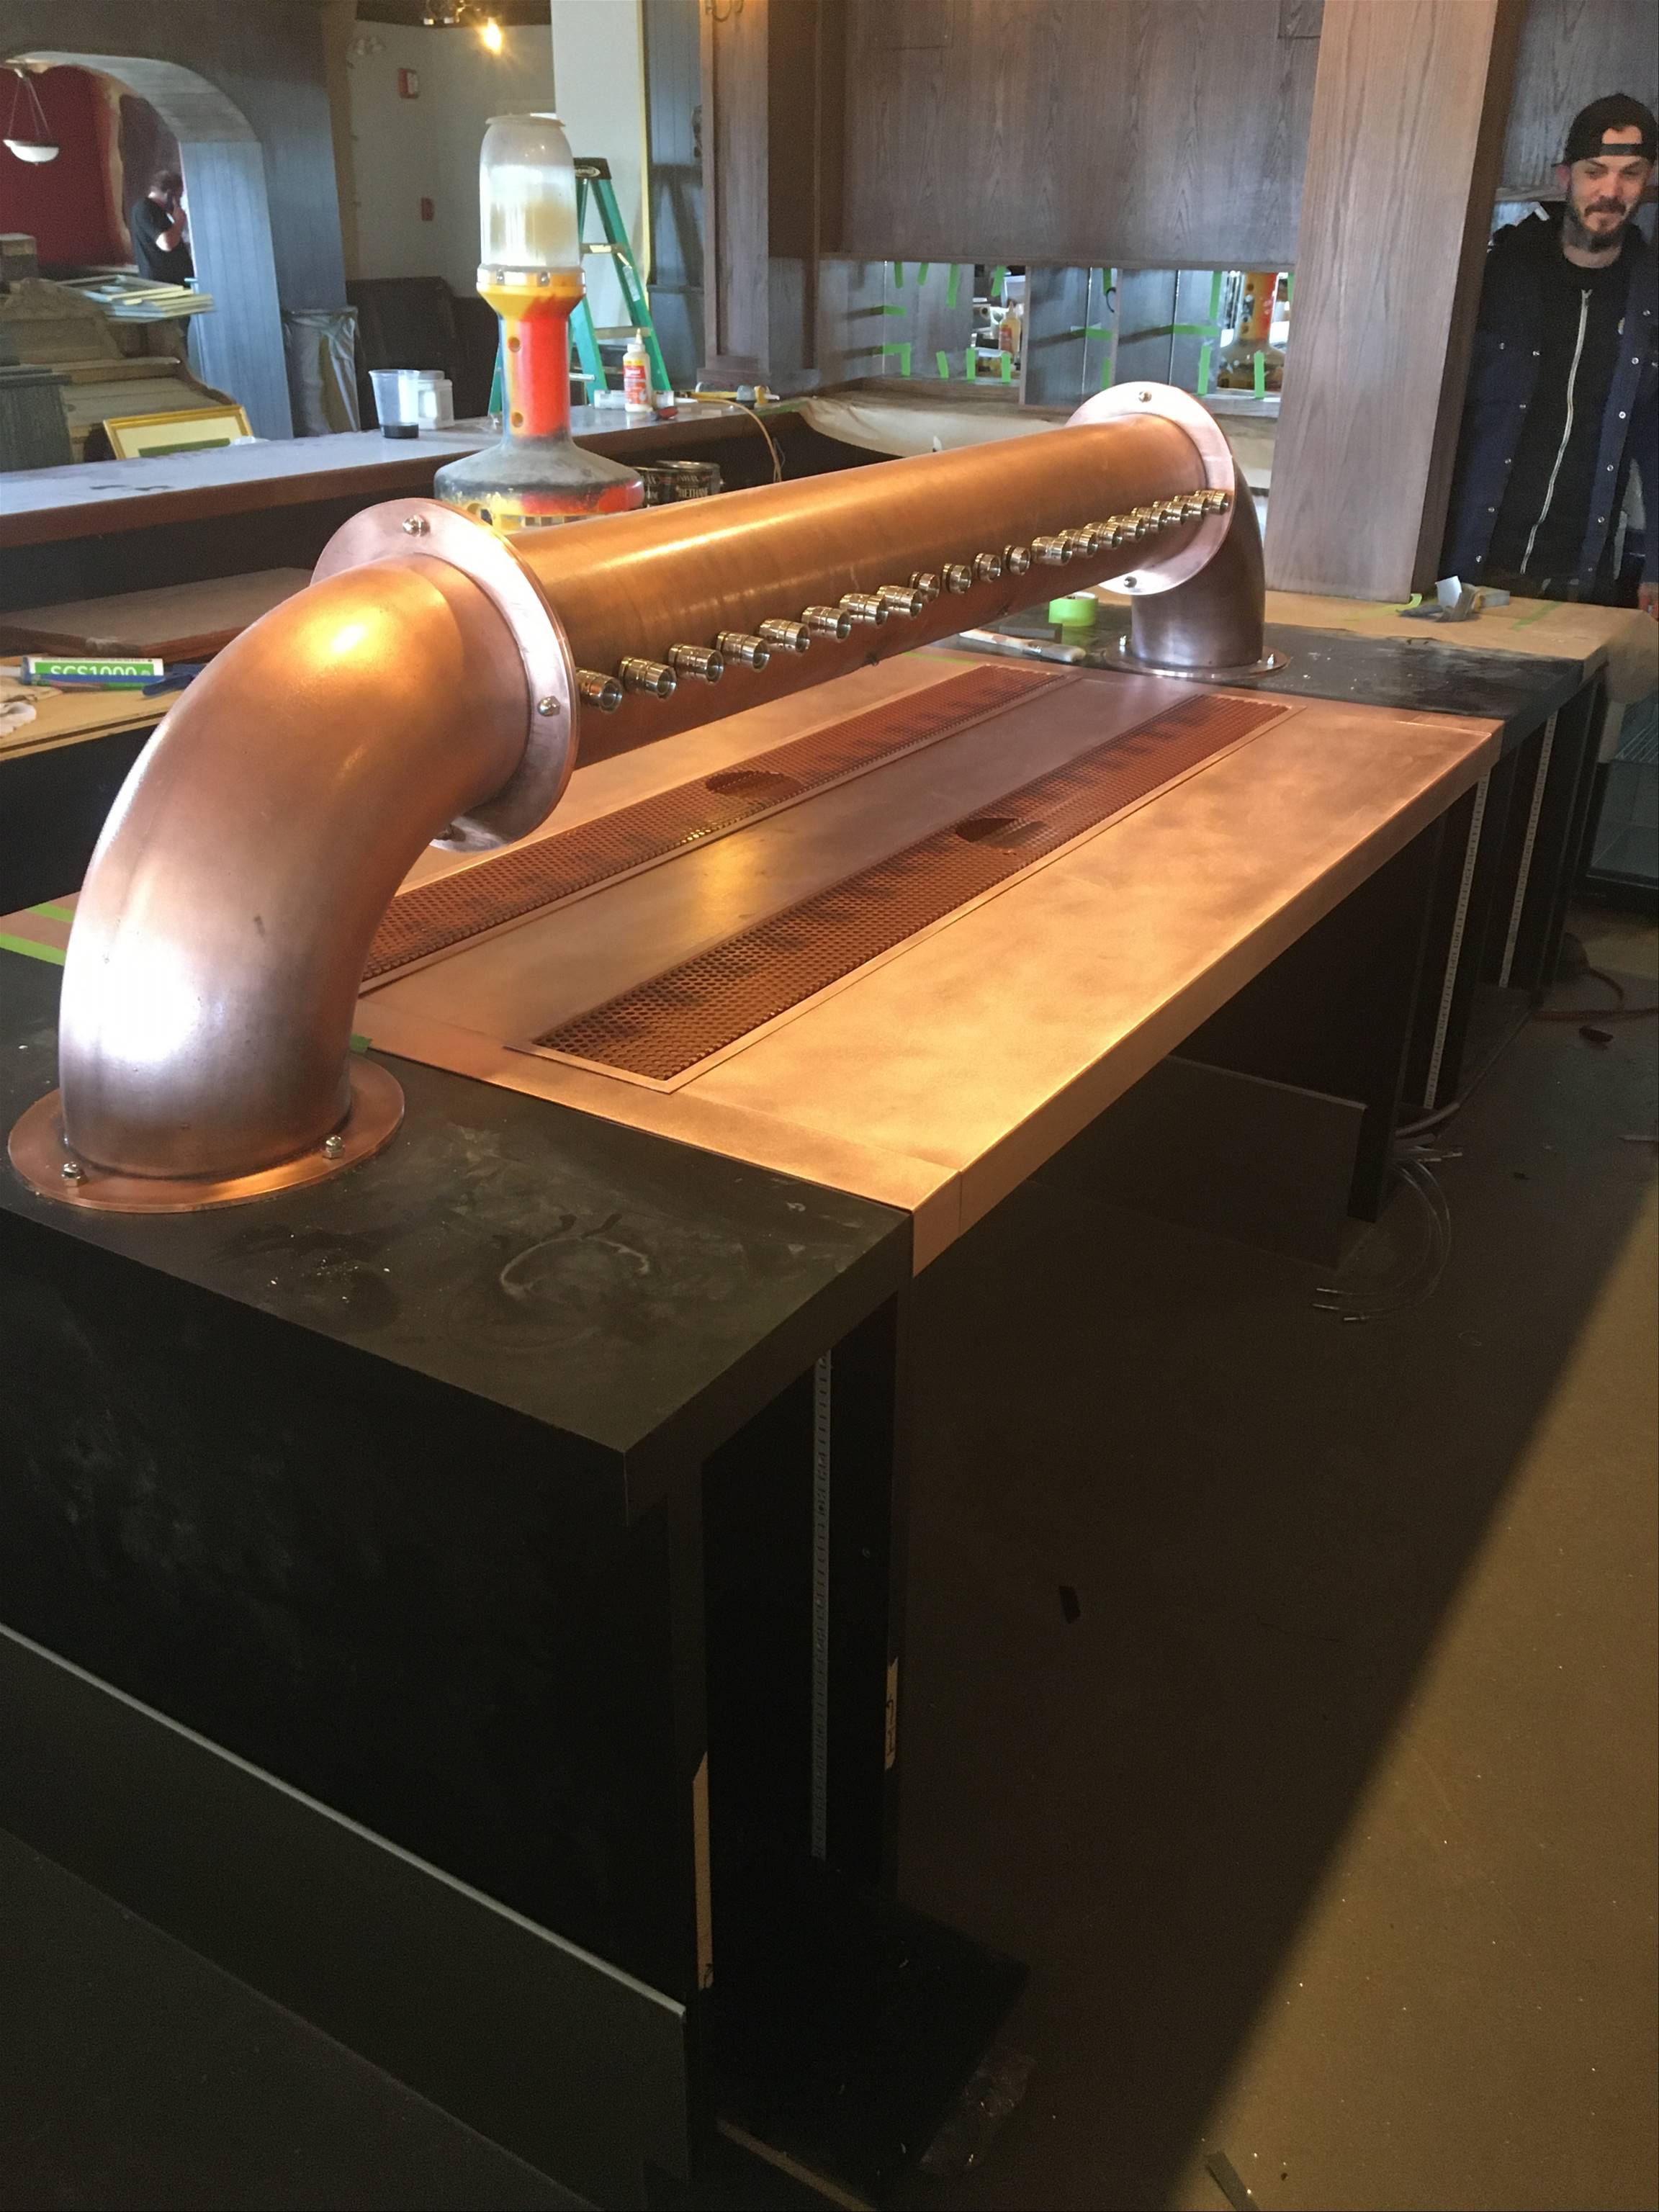 copper-pipe